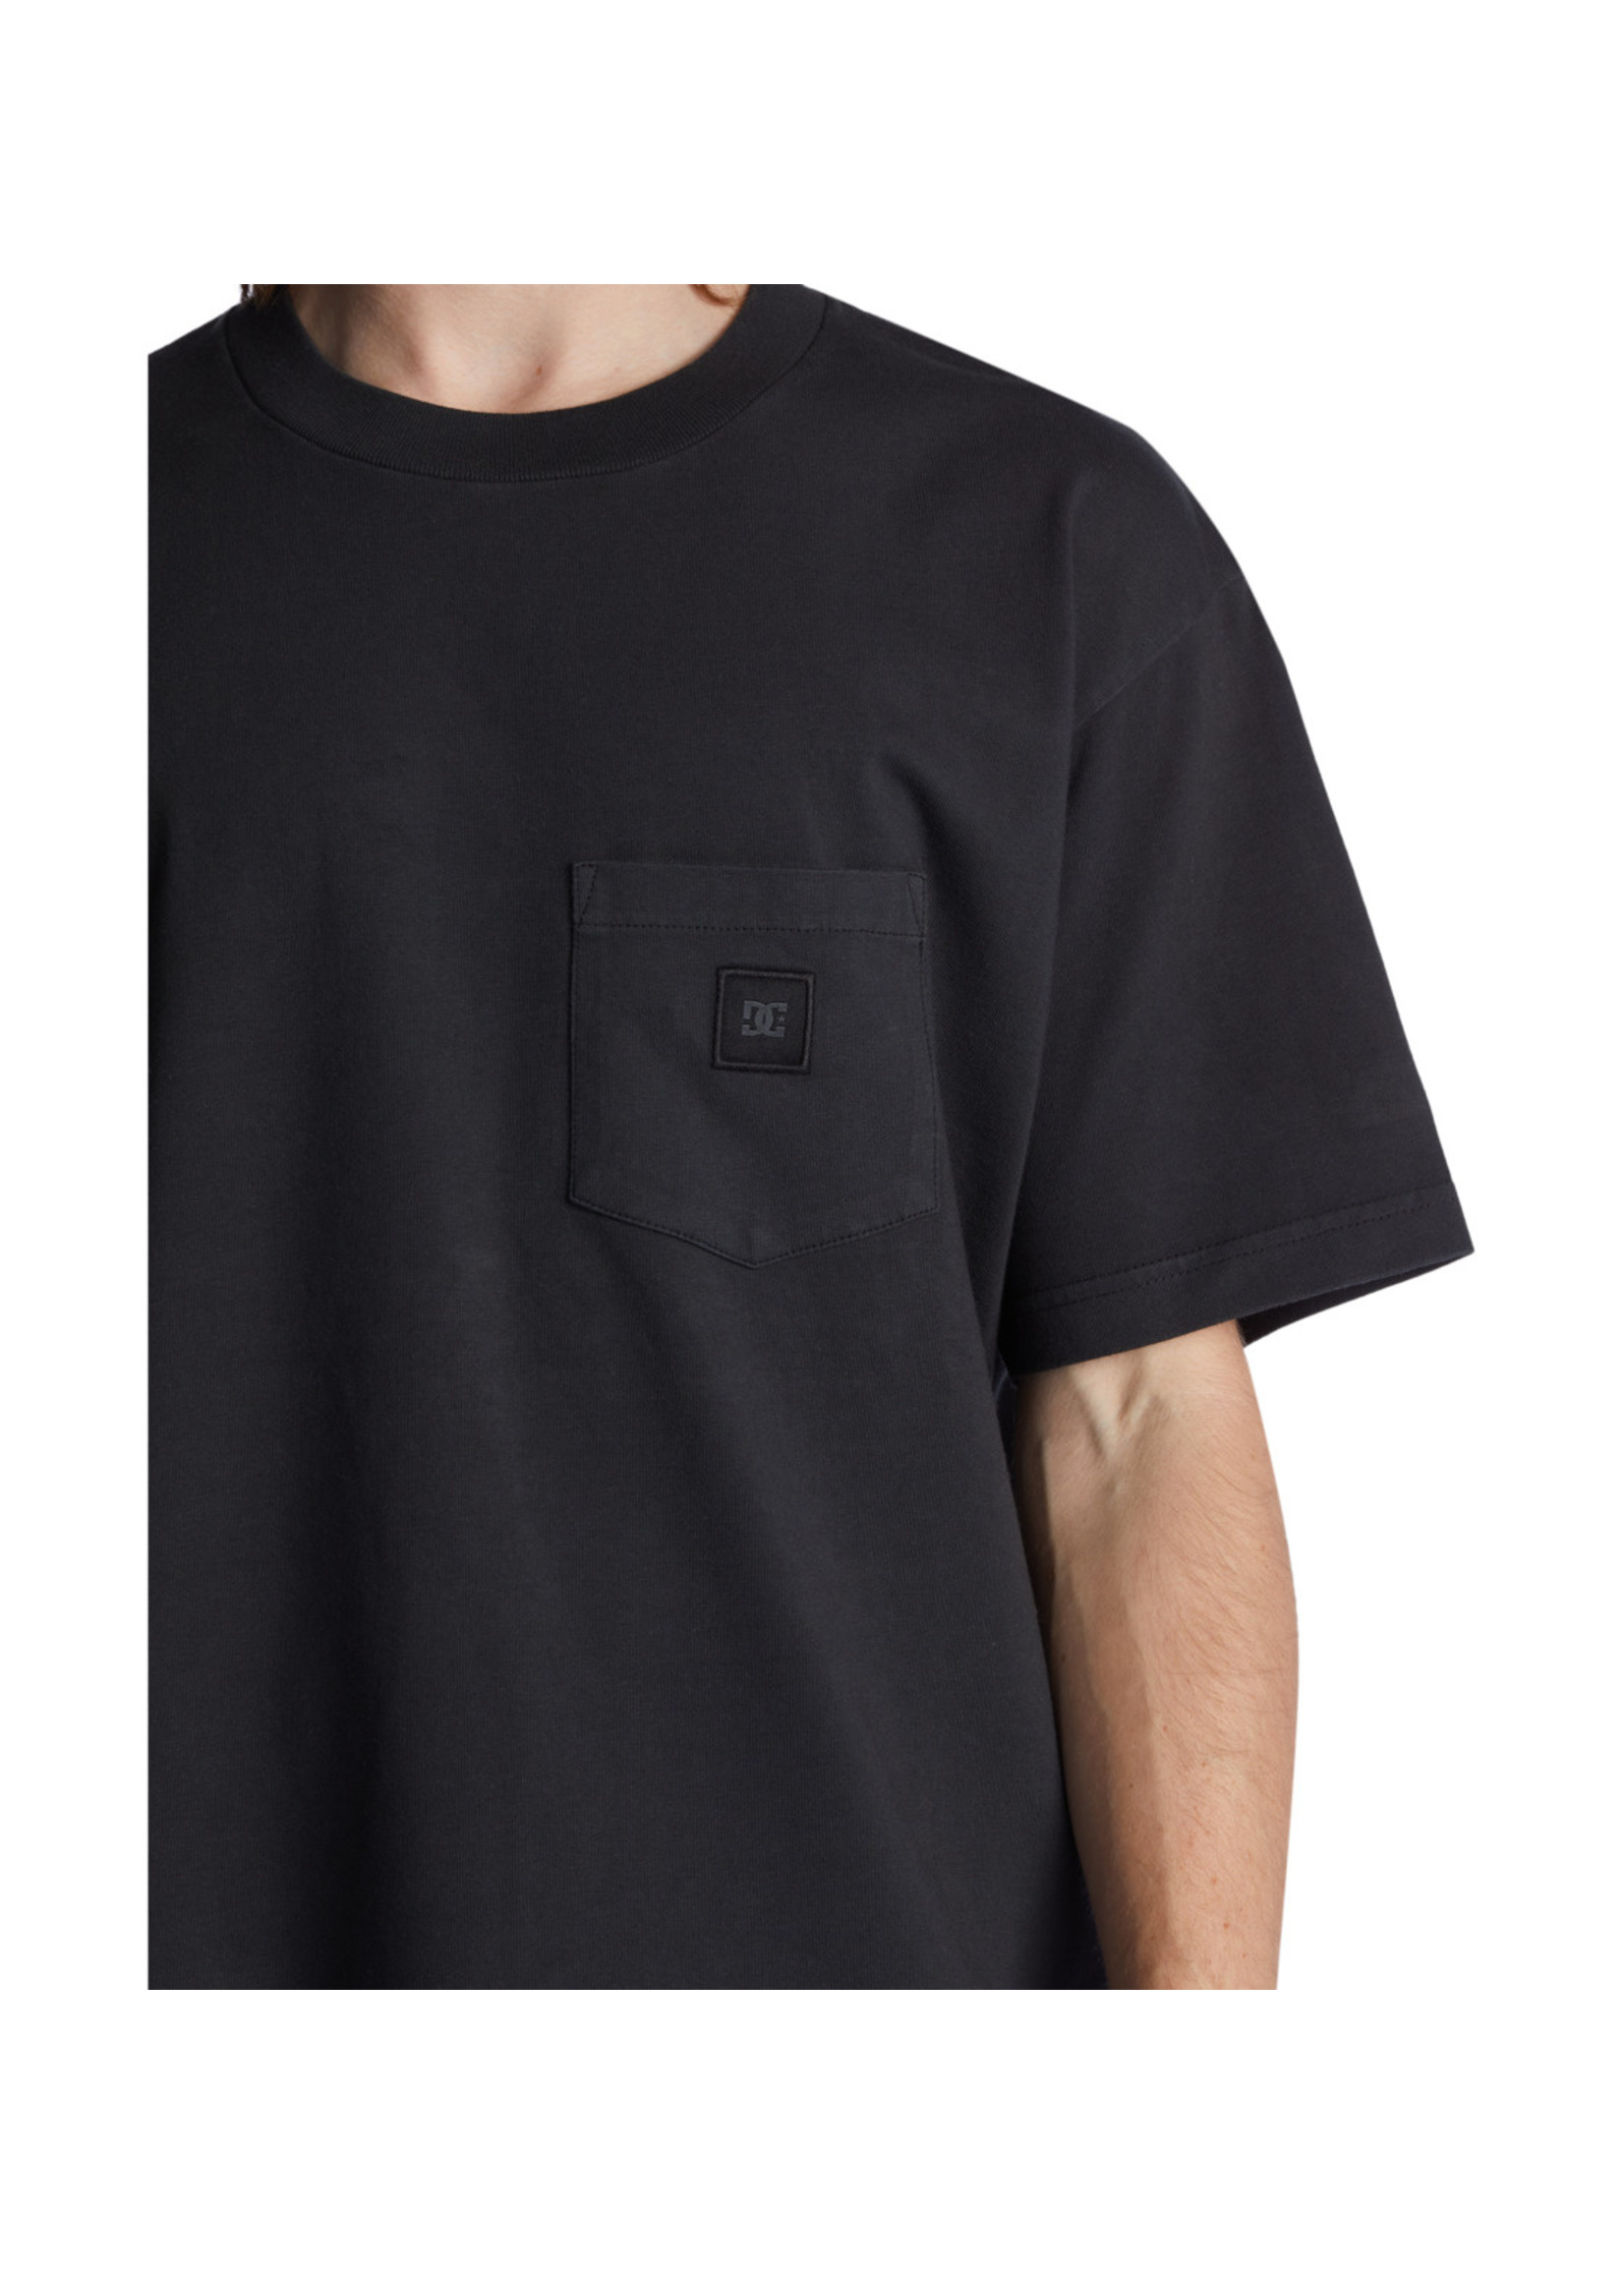 DCshoes 1994 Pocket T-Shirt - Black Garment Dye